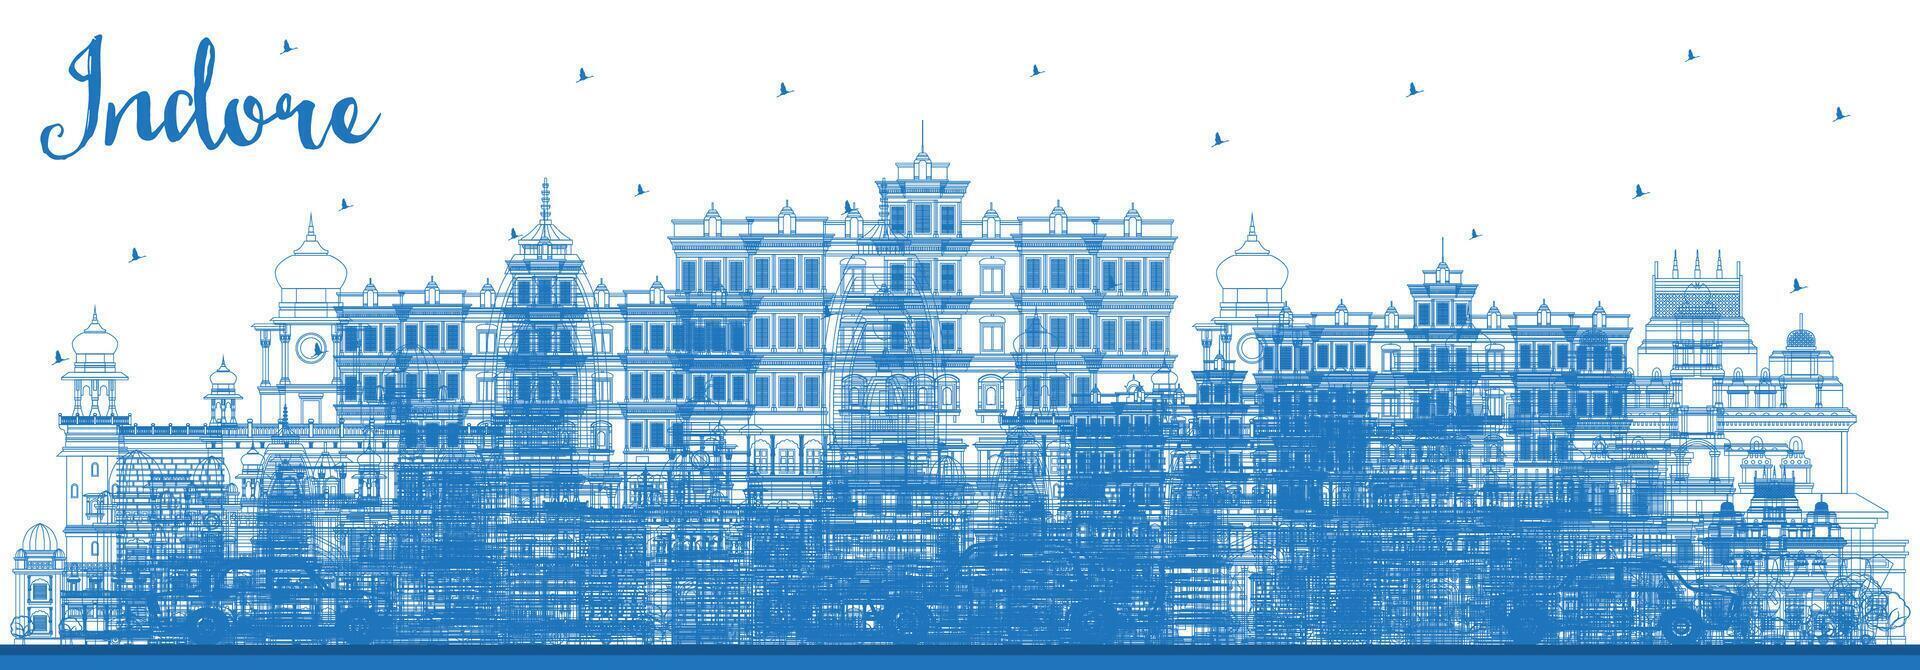 indorar India ciudad horizonte con gris edificios y azul cielo. negocio viaje y turismo concepto con histórico arquitectura. indorar madhya Pradesh paisaje urbano con puntos de referencia vector